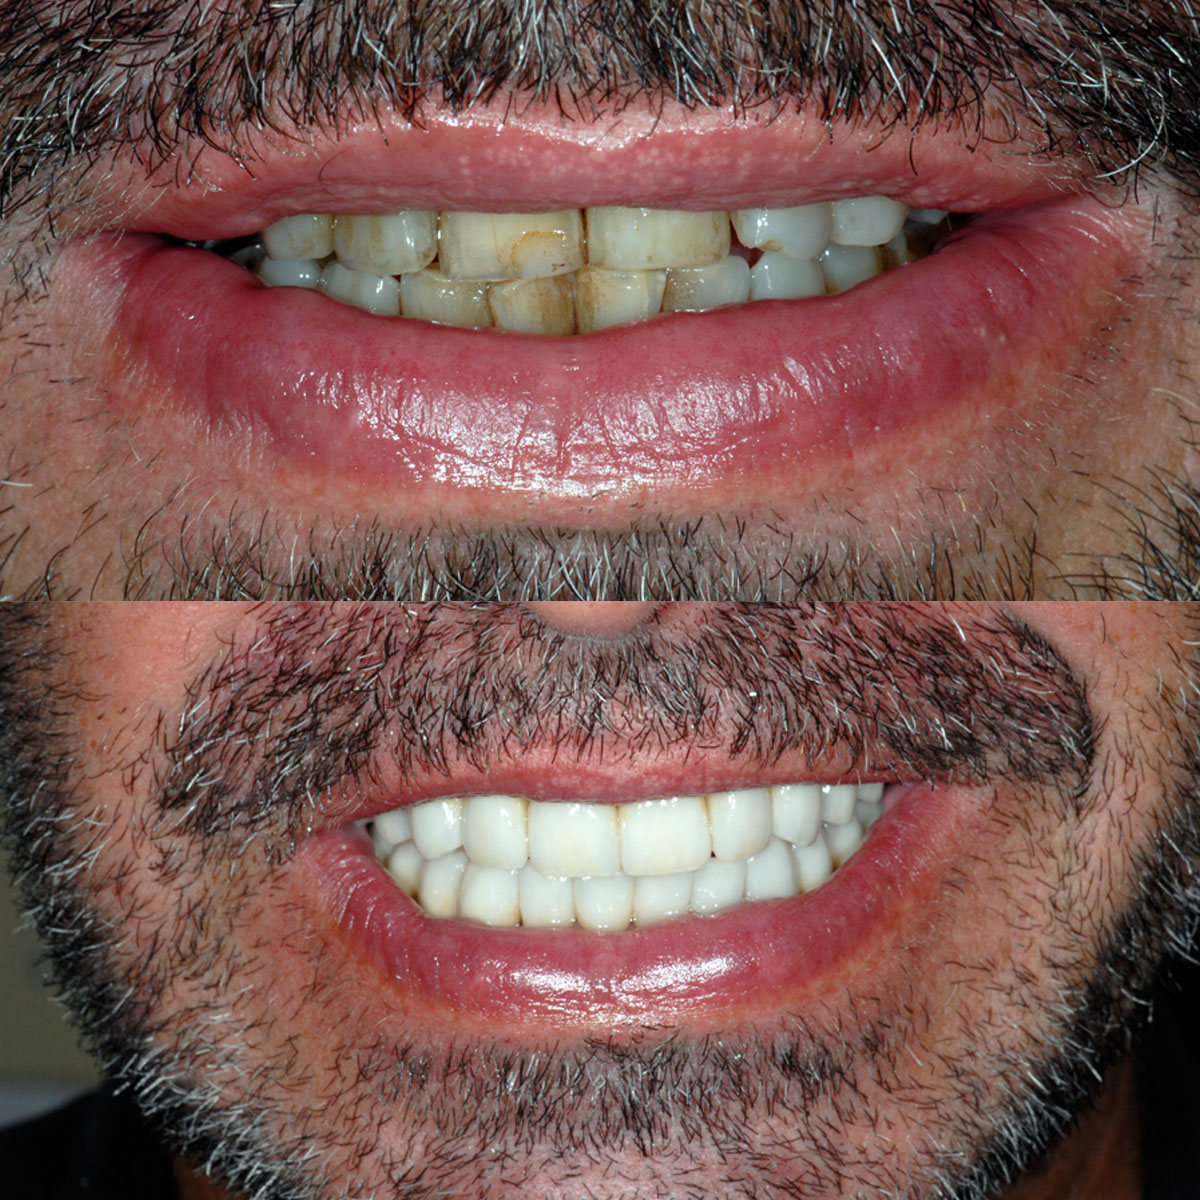 Full-Mouth Dental Implant